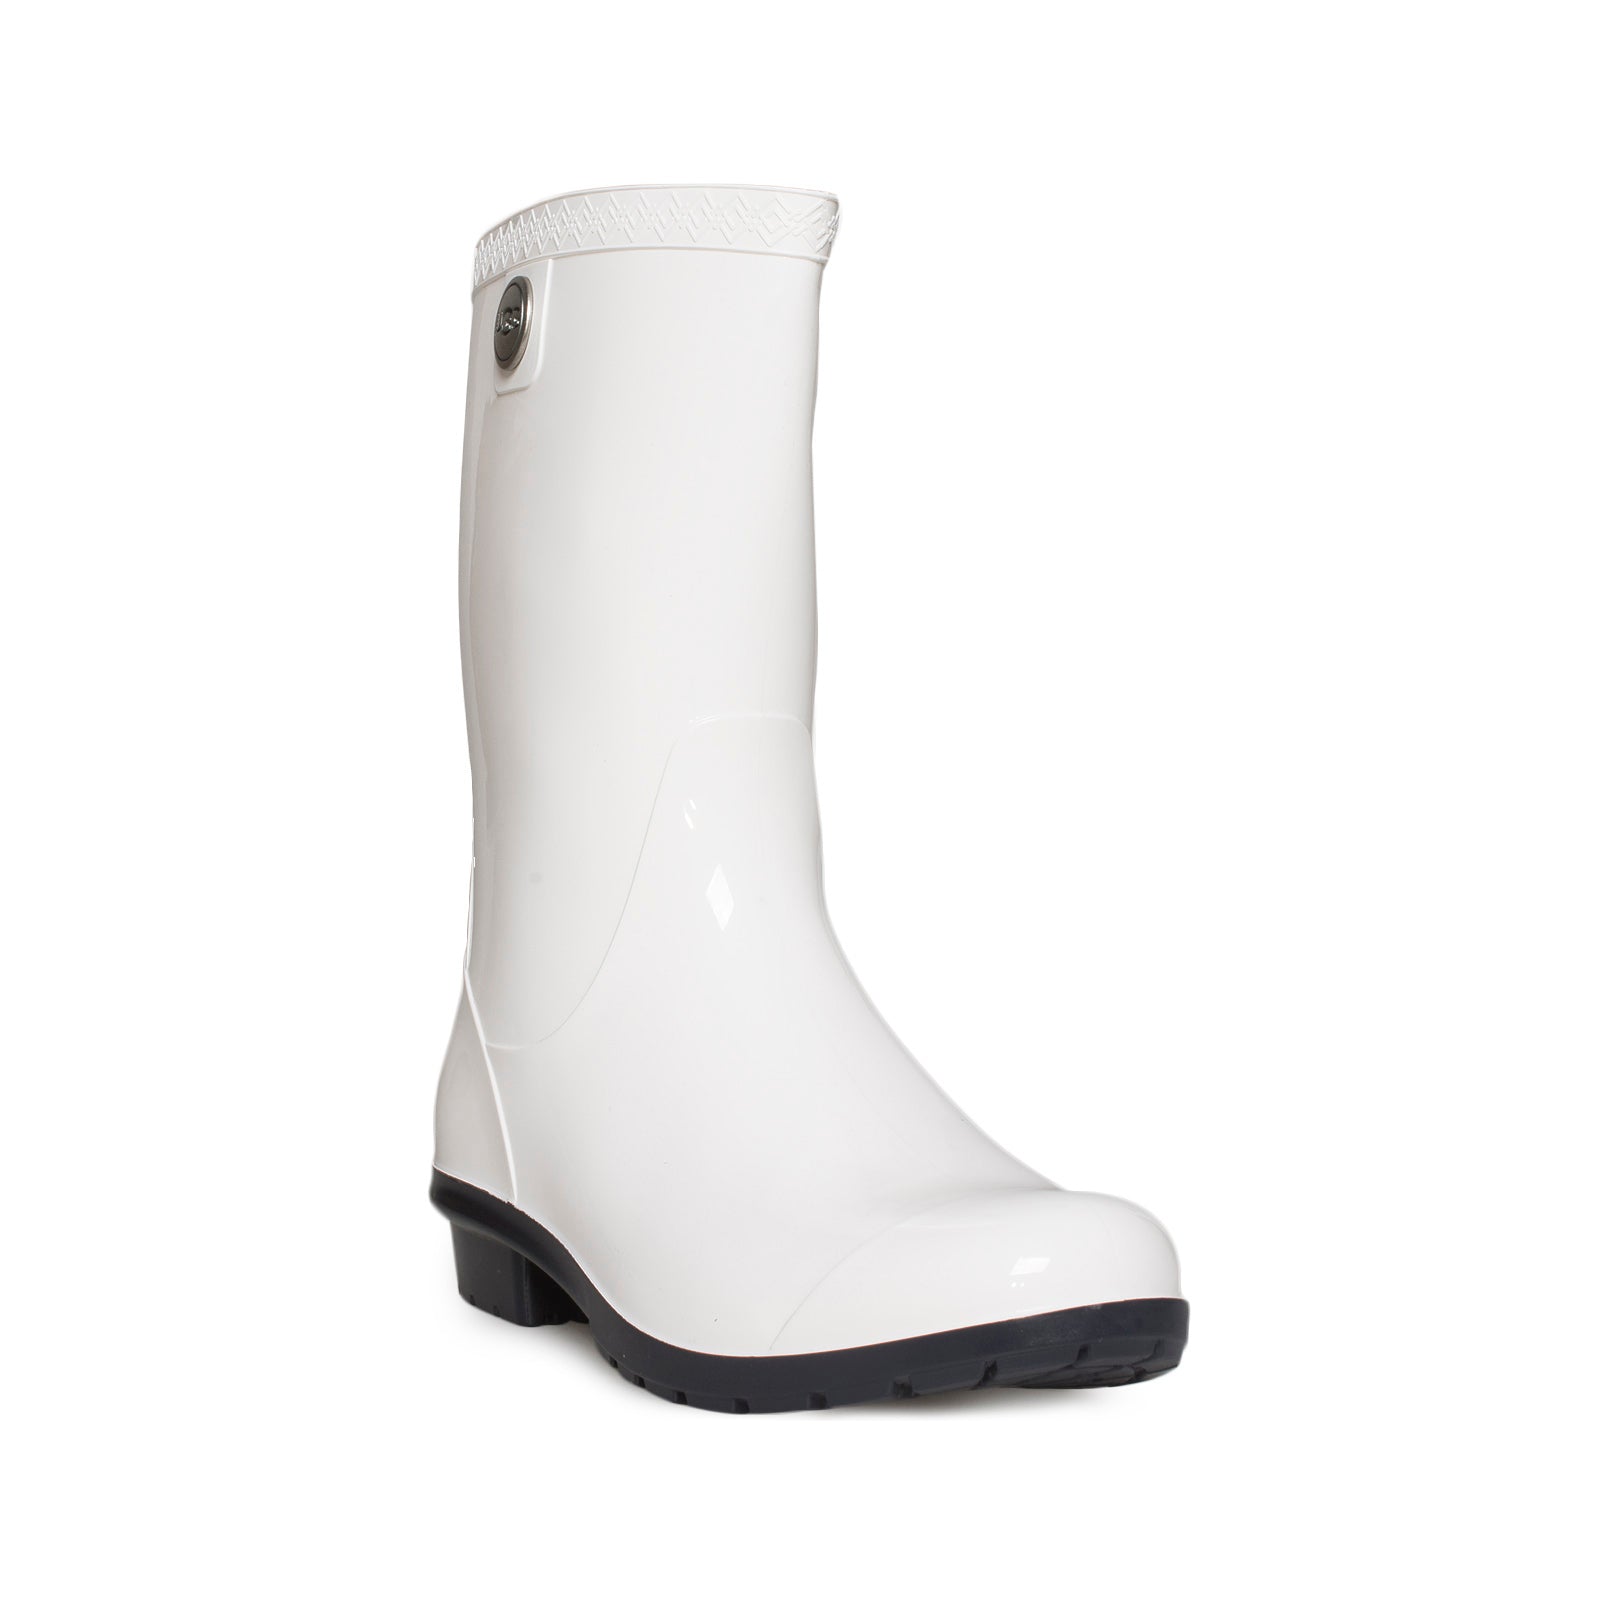 ugg white rain boots